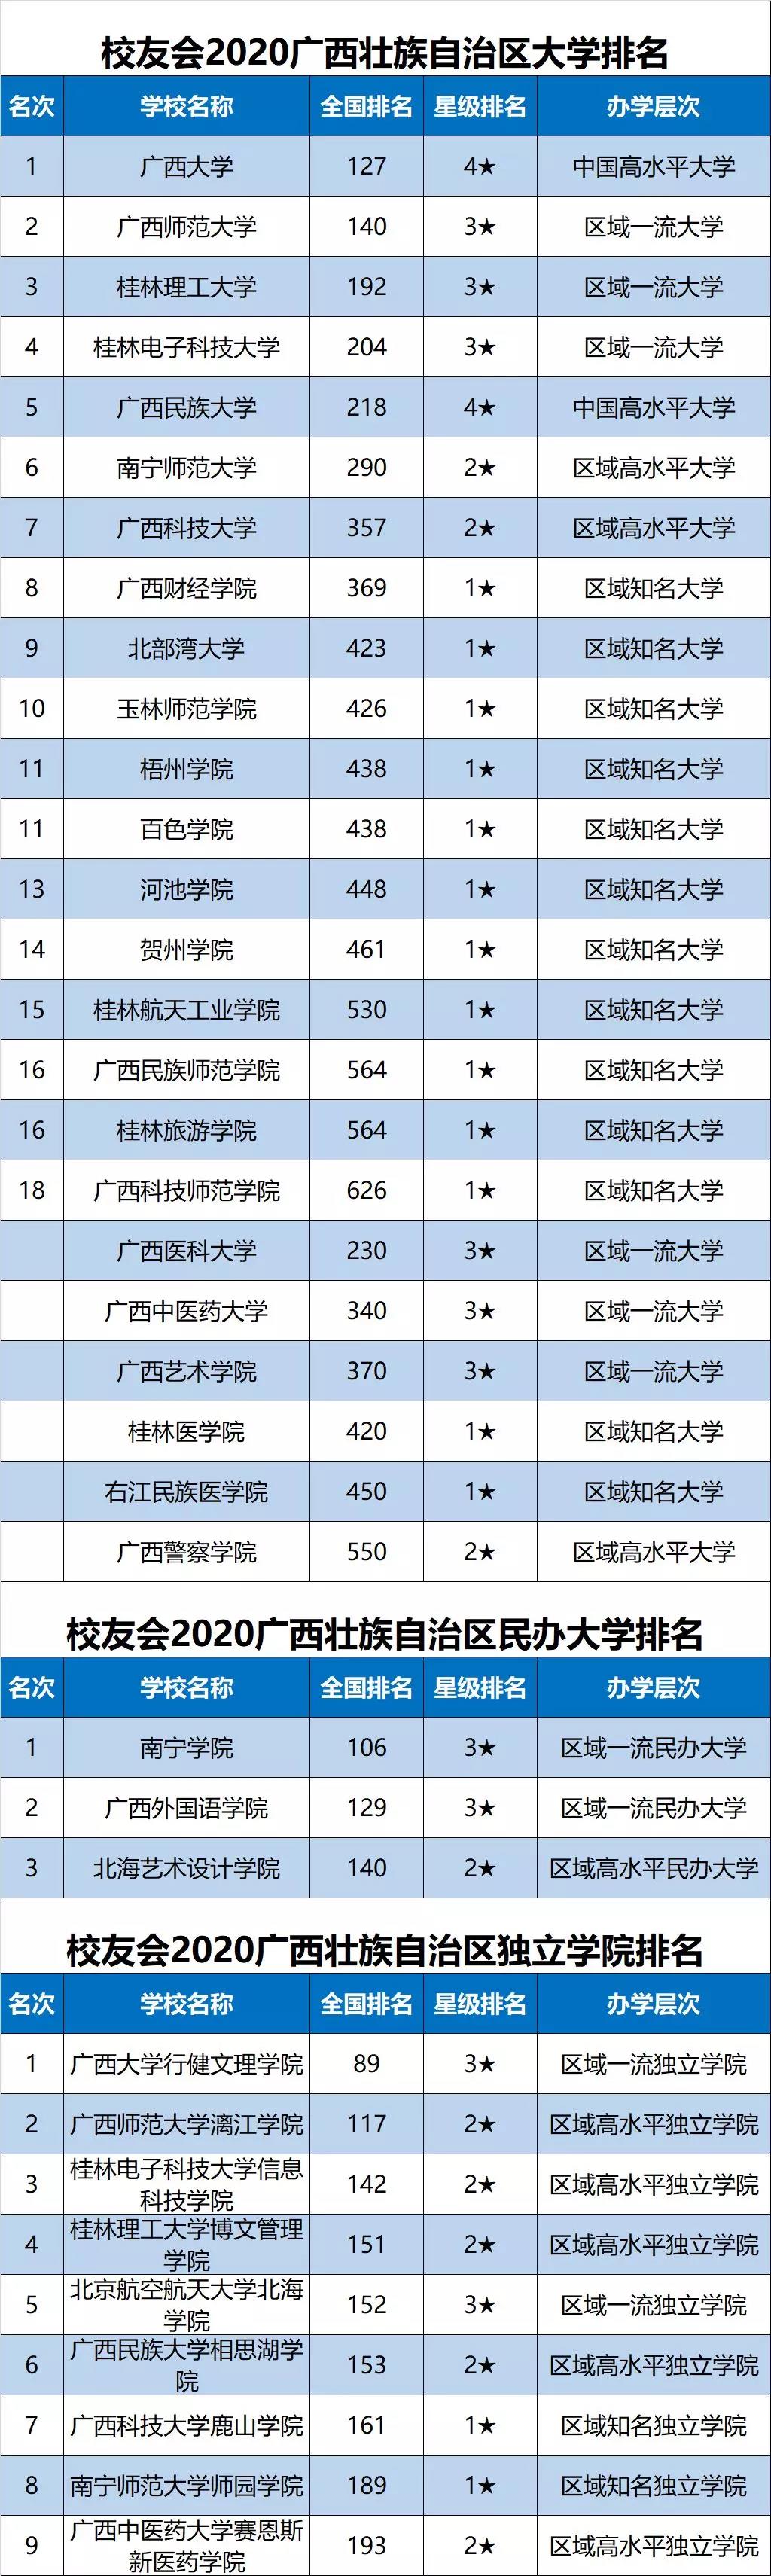 共有3所高校跻身校友会2020中国大学排名200强,广西大学,广西师范大学